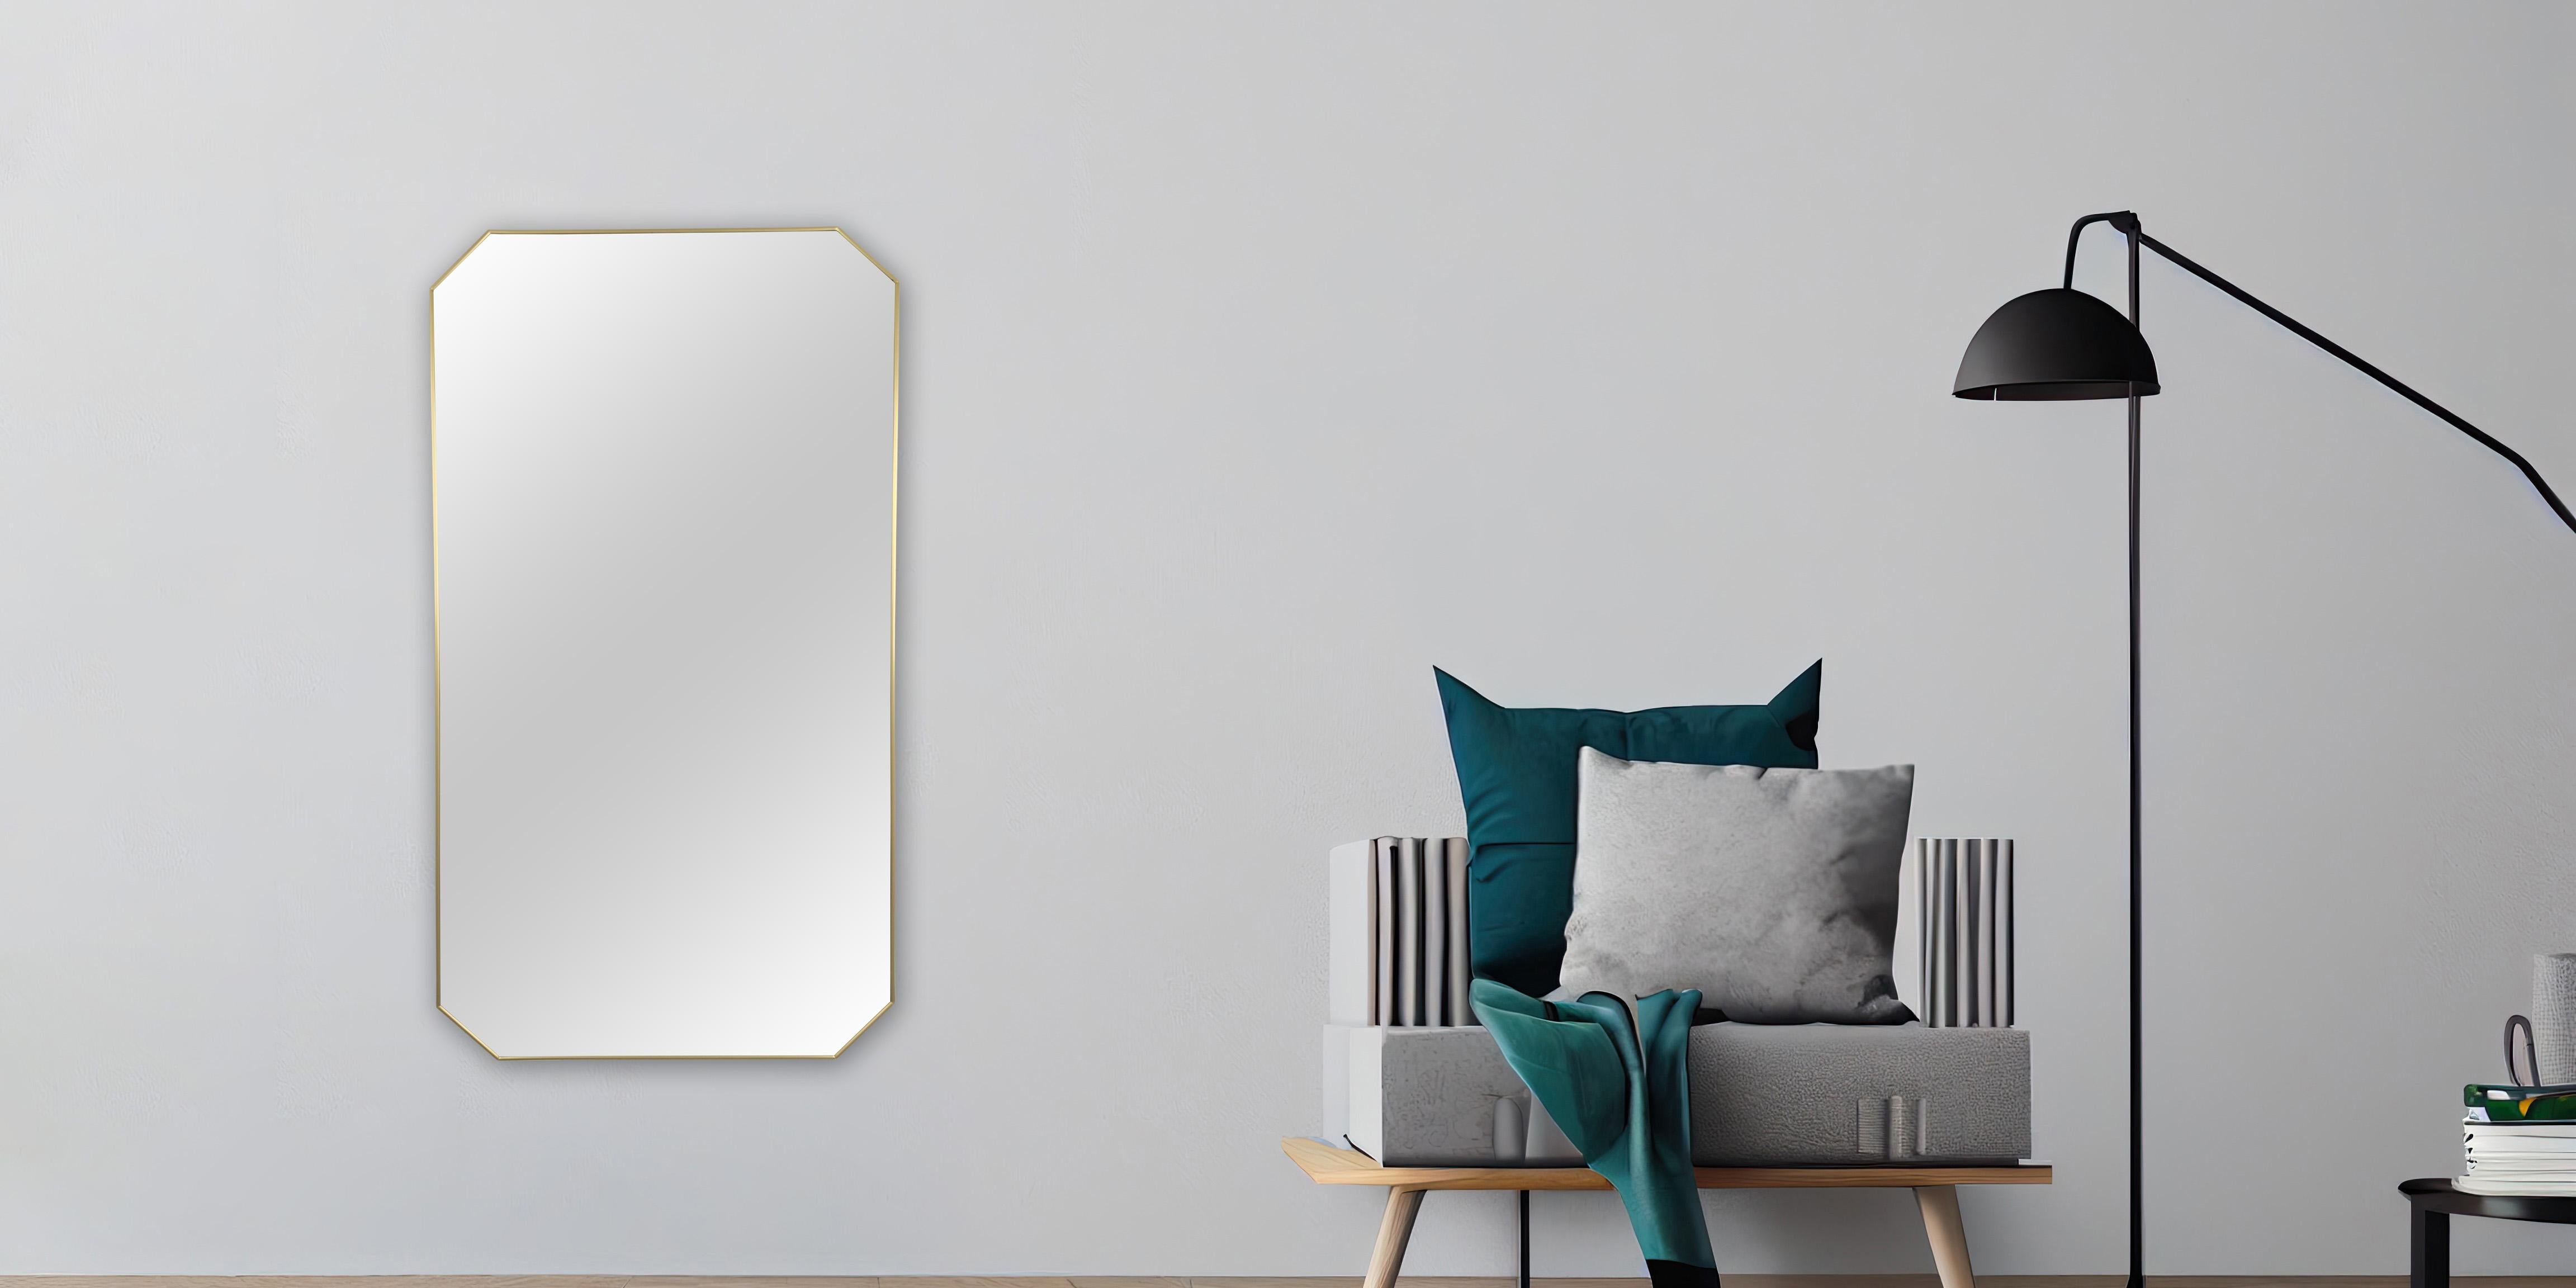 A  Spiegel im Stil der Mid Century Modern von Friedman Brothers. Dieser mit viel Liebe zum Detail gefertigte Spiegel hat eine bezaubernde achteckige Form, die schlichte Eleganz ausstrahlt. Der Rahmen aus glänzendem Messing ergänzt den Spiegel aus